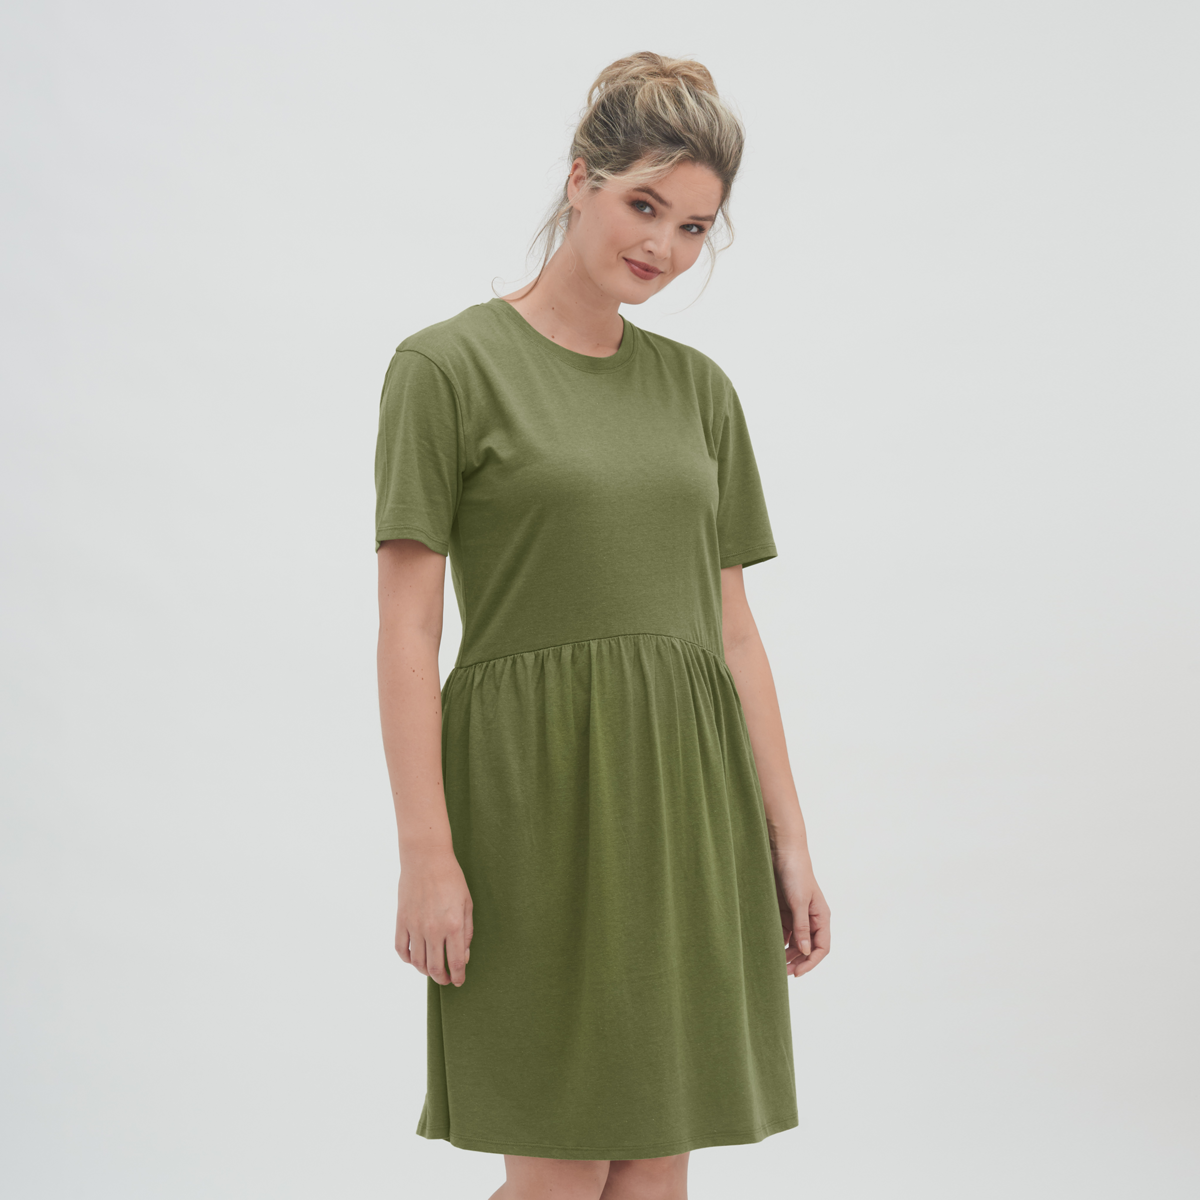 Grün Damen Kleid